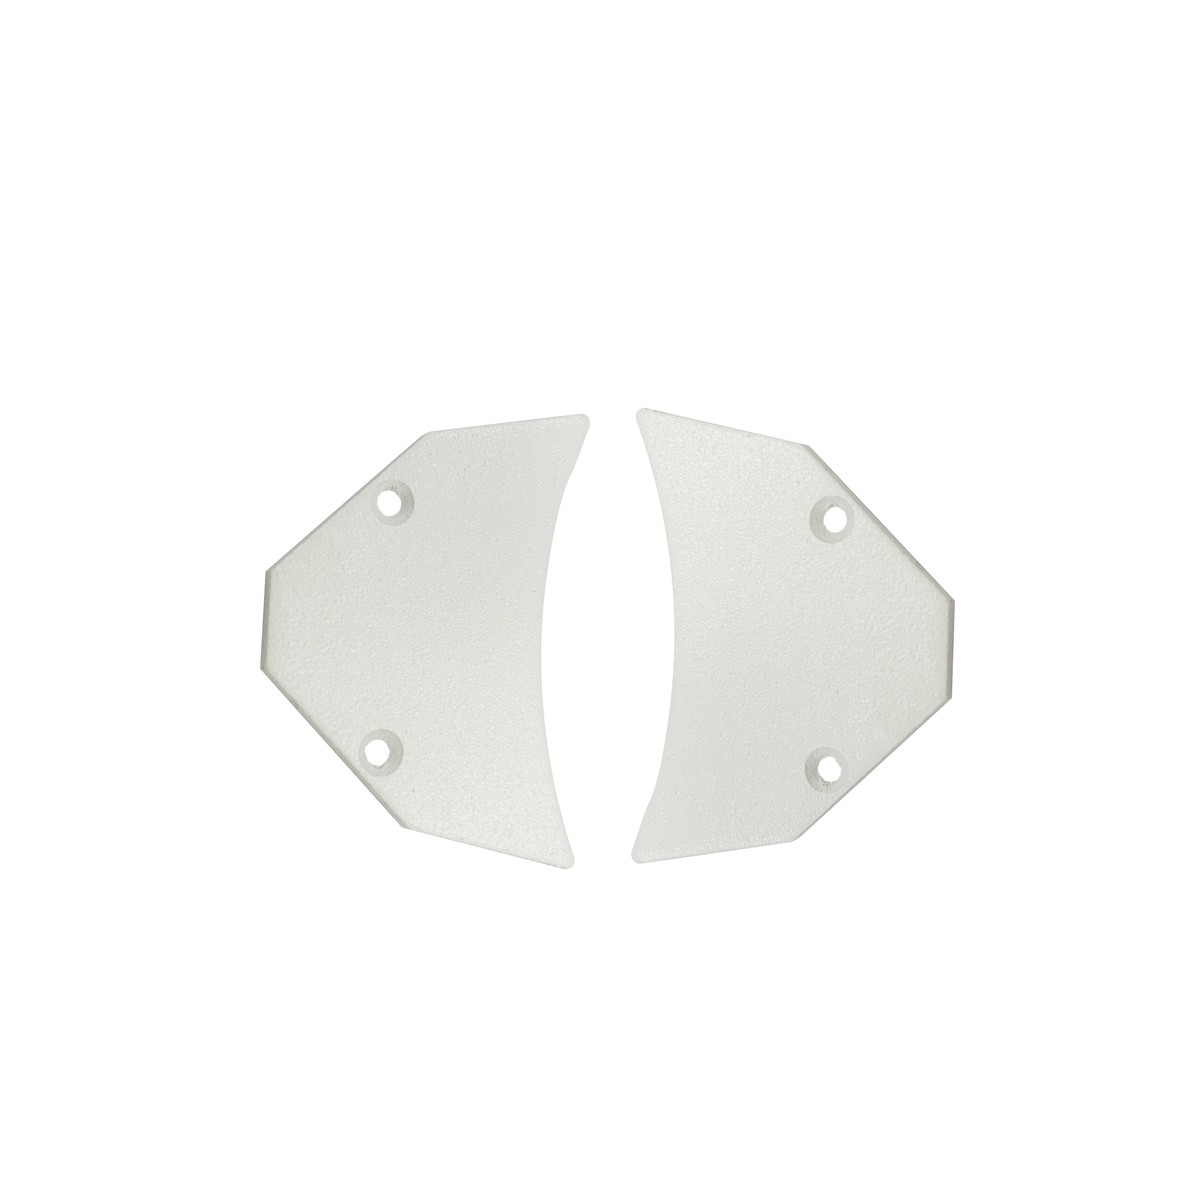 Endkappe für Alu-Profil für Doppel-LED-Streifen - BPERFALP191 - Abdeckung